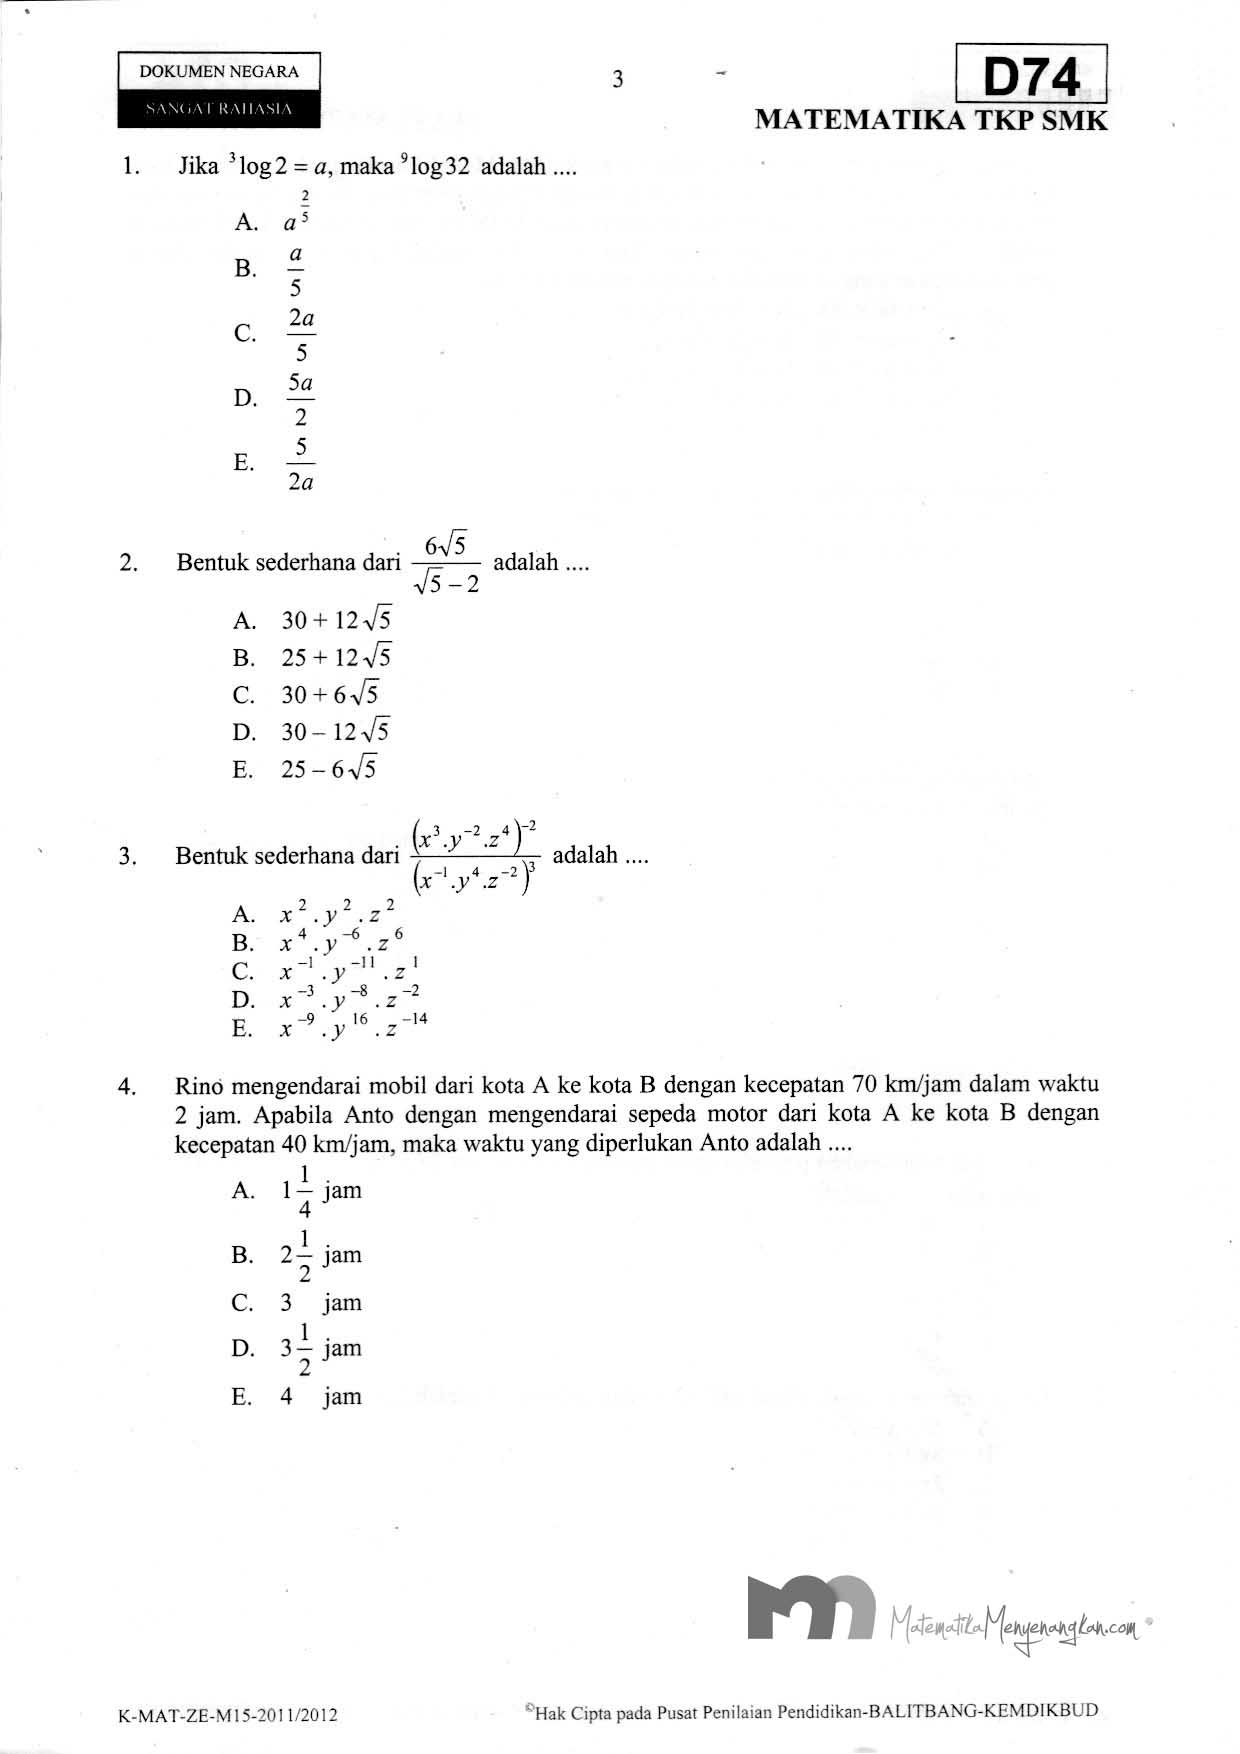 Download Soal Ujian Nasional Smk 2011 2012 Smk Matematika Tkp